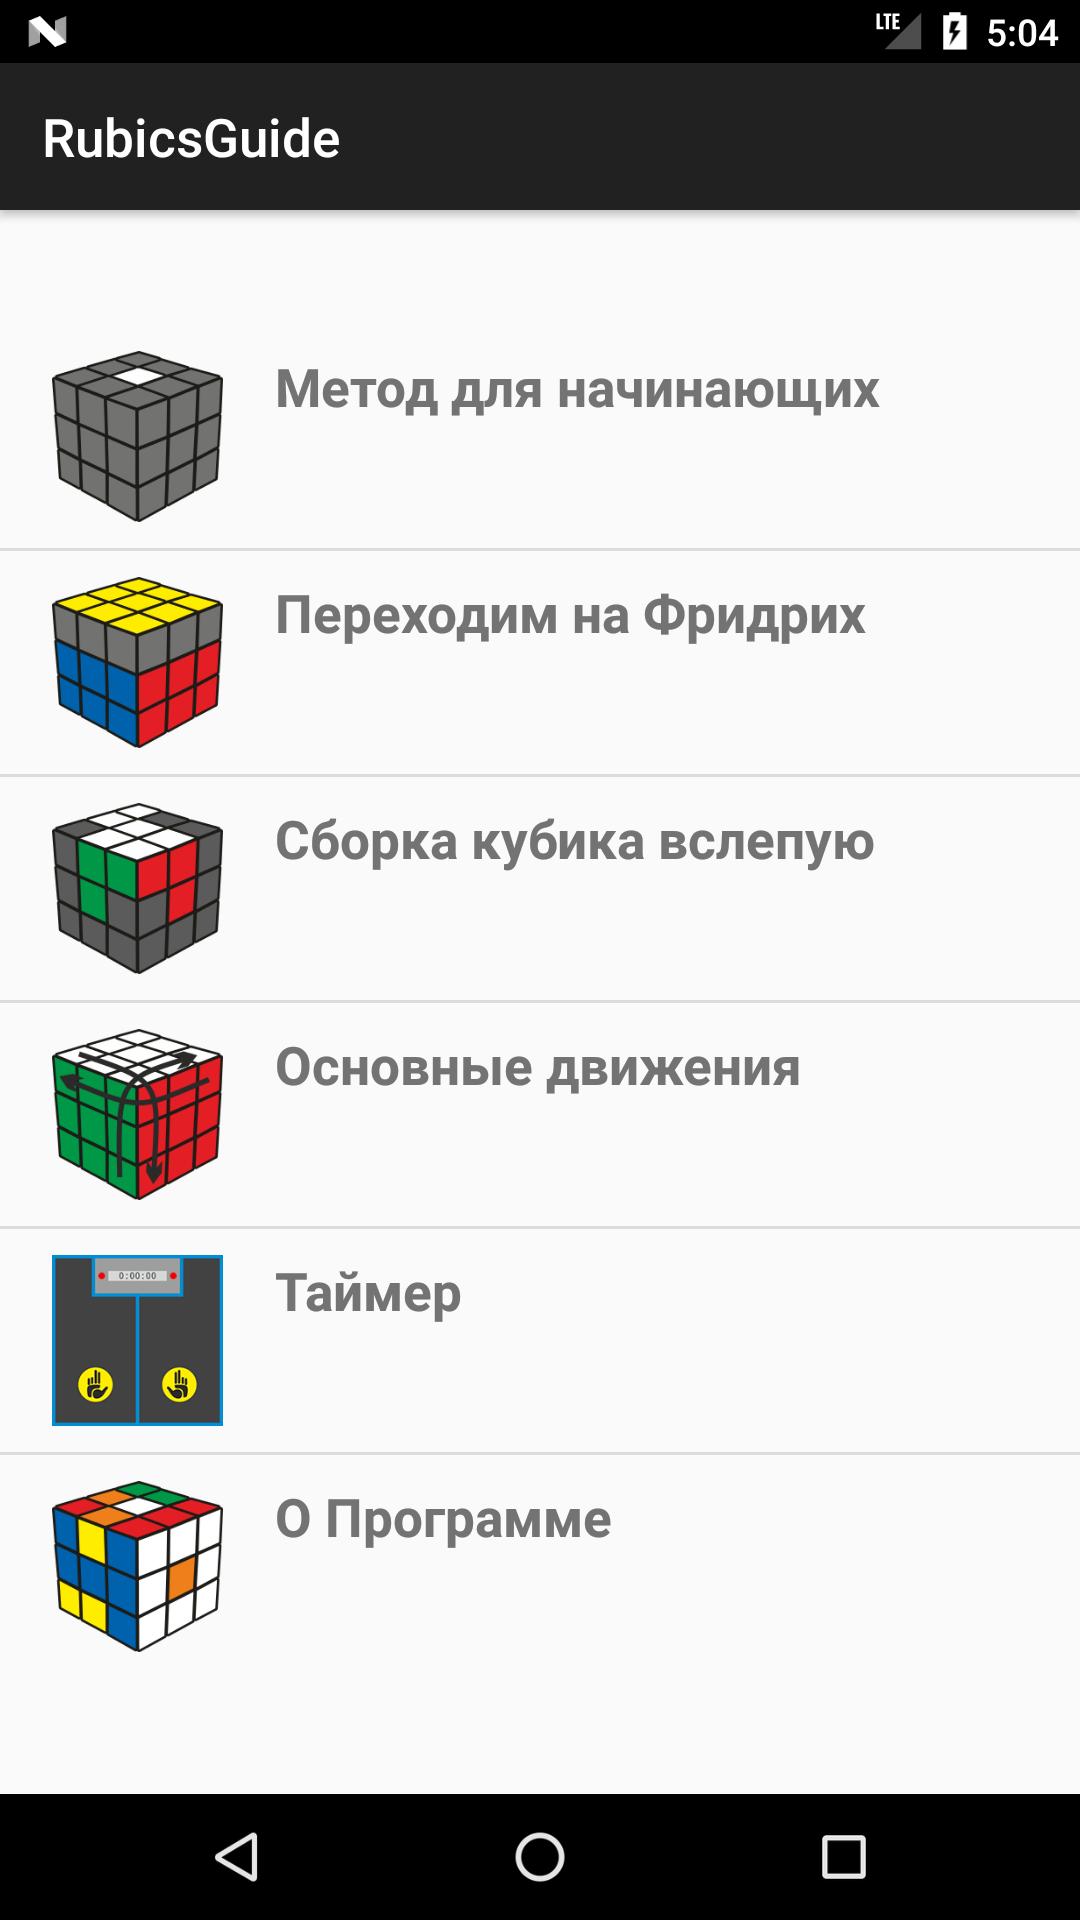 Приложение собрать кубик 3 на 3. Как собрать кубик Рубика 3х3 приложение. Сборка кубика Рубика 3х3 приложение. Приложение для сбора кубика Рубика 3х3. Приложение чтобы собрать кубик Рубика 3х3.